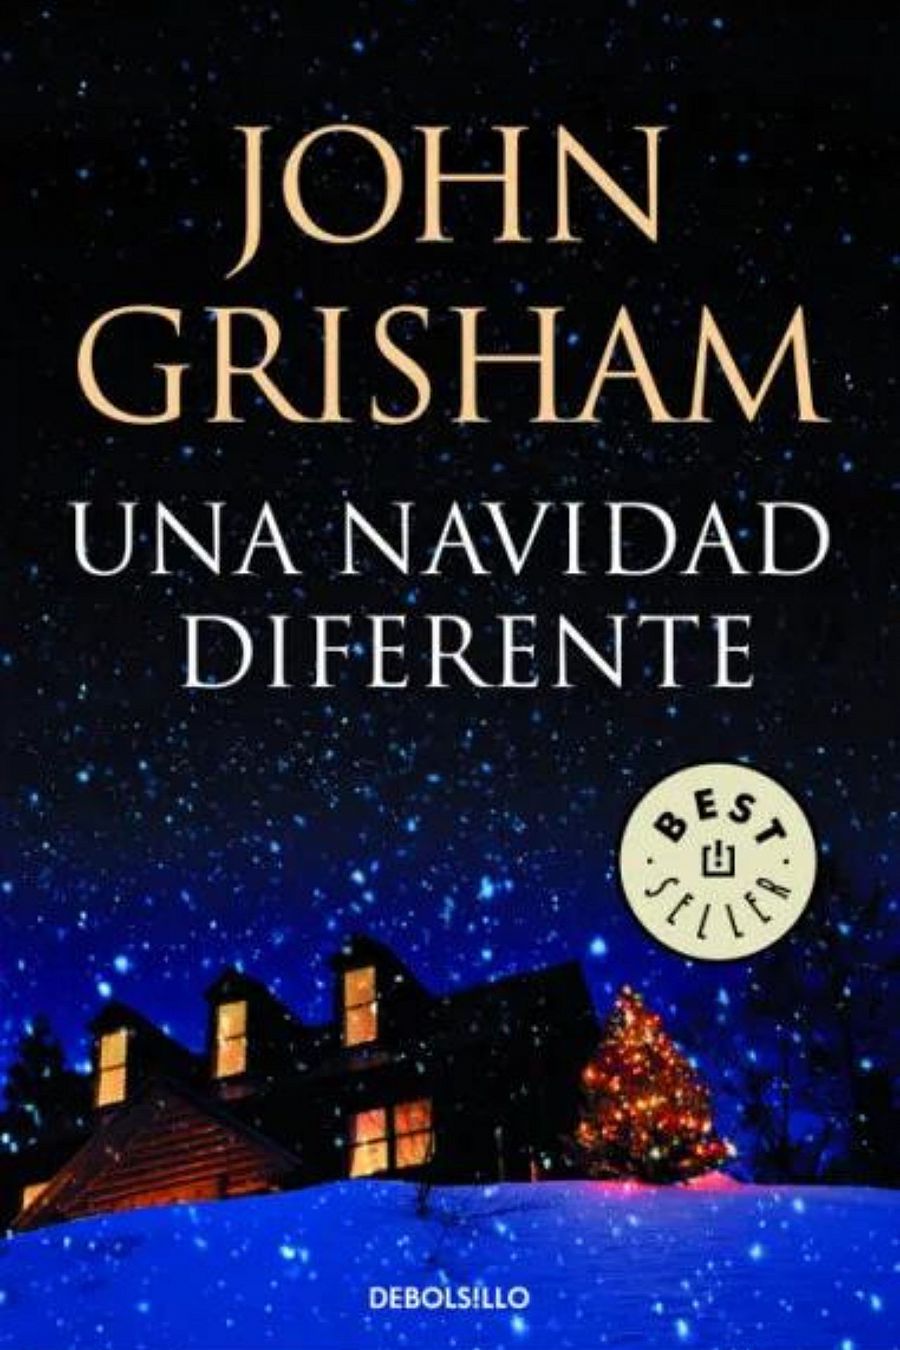 'Una Navidad diferente', libro para leer en Navidad 2022